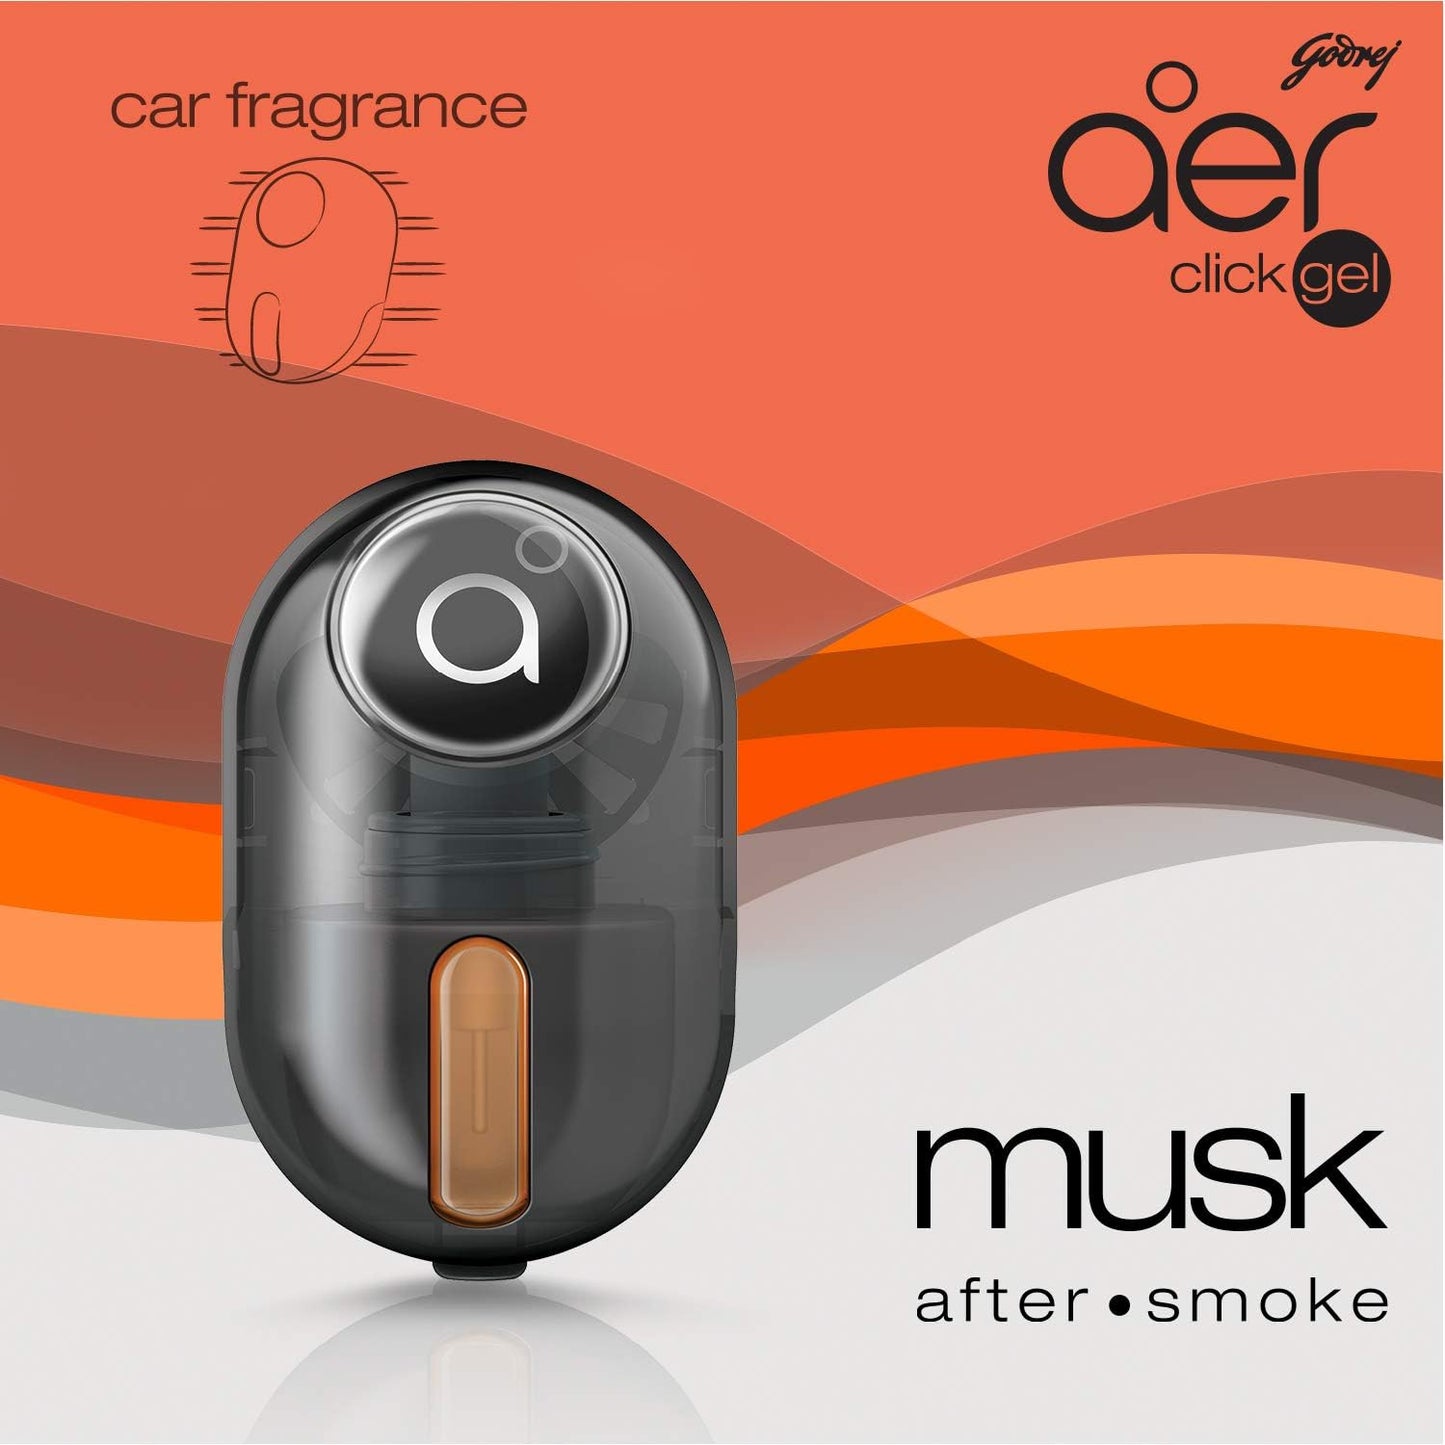 Godrej aer Click, Car Vent Air Freshener Kit - Musk After Smoke (10G), Black